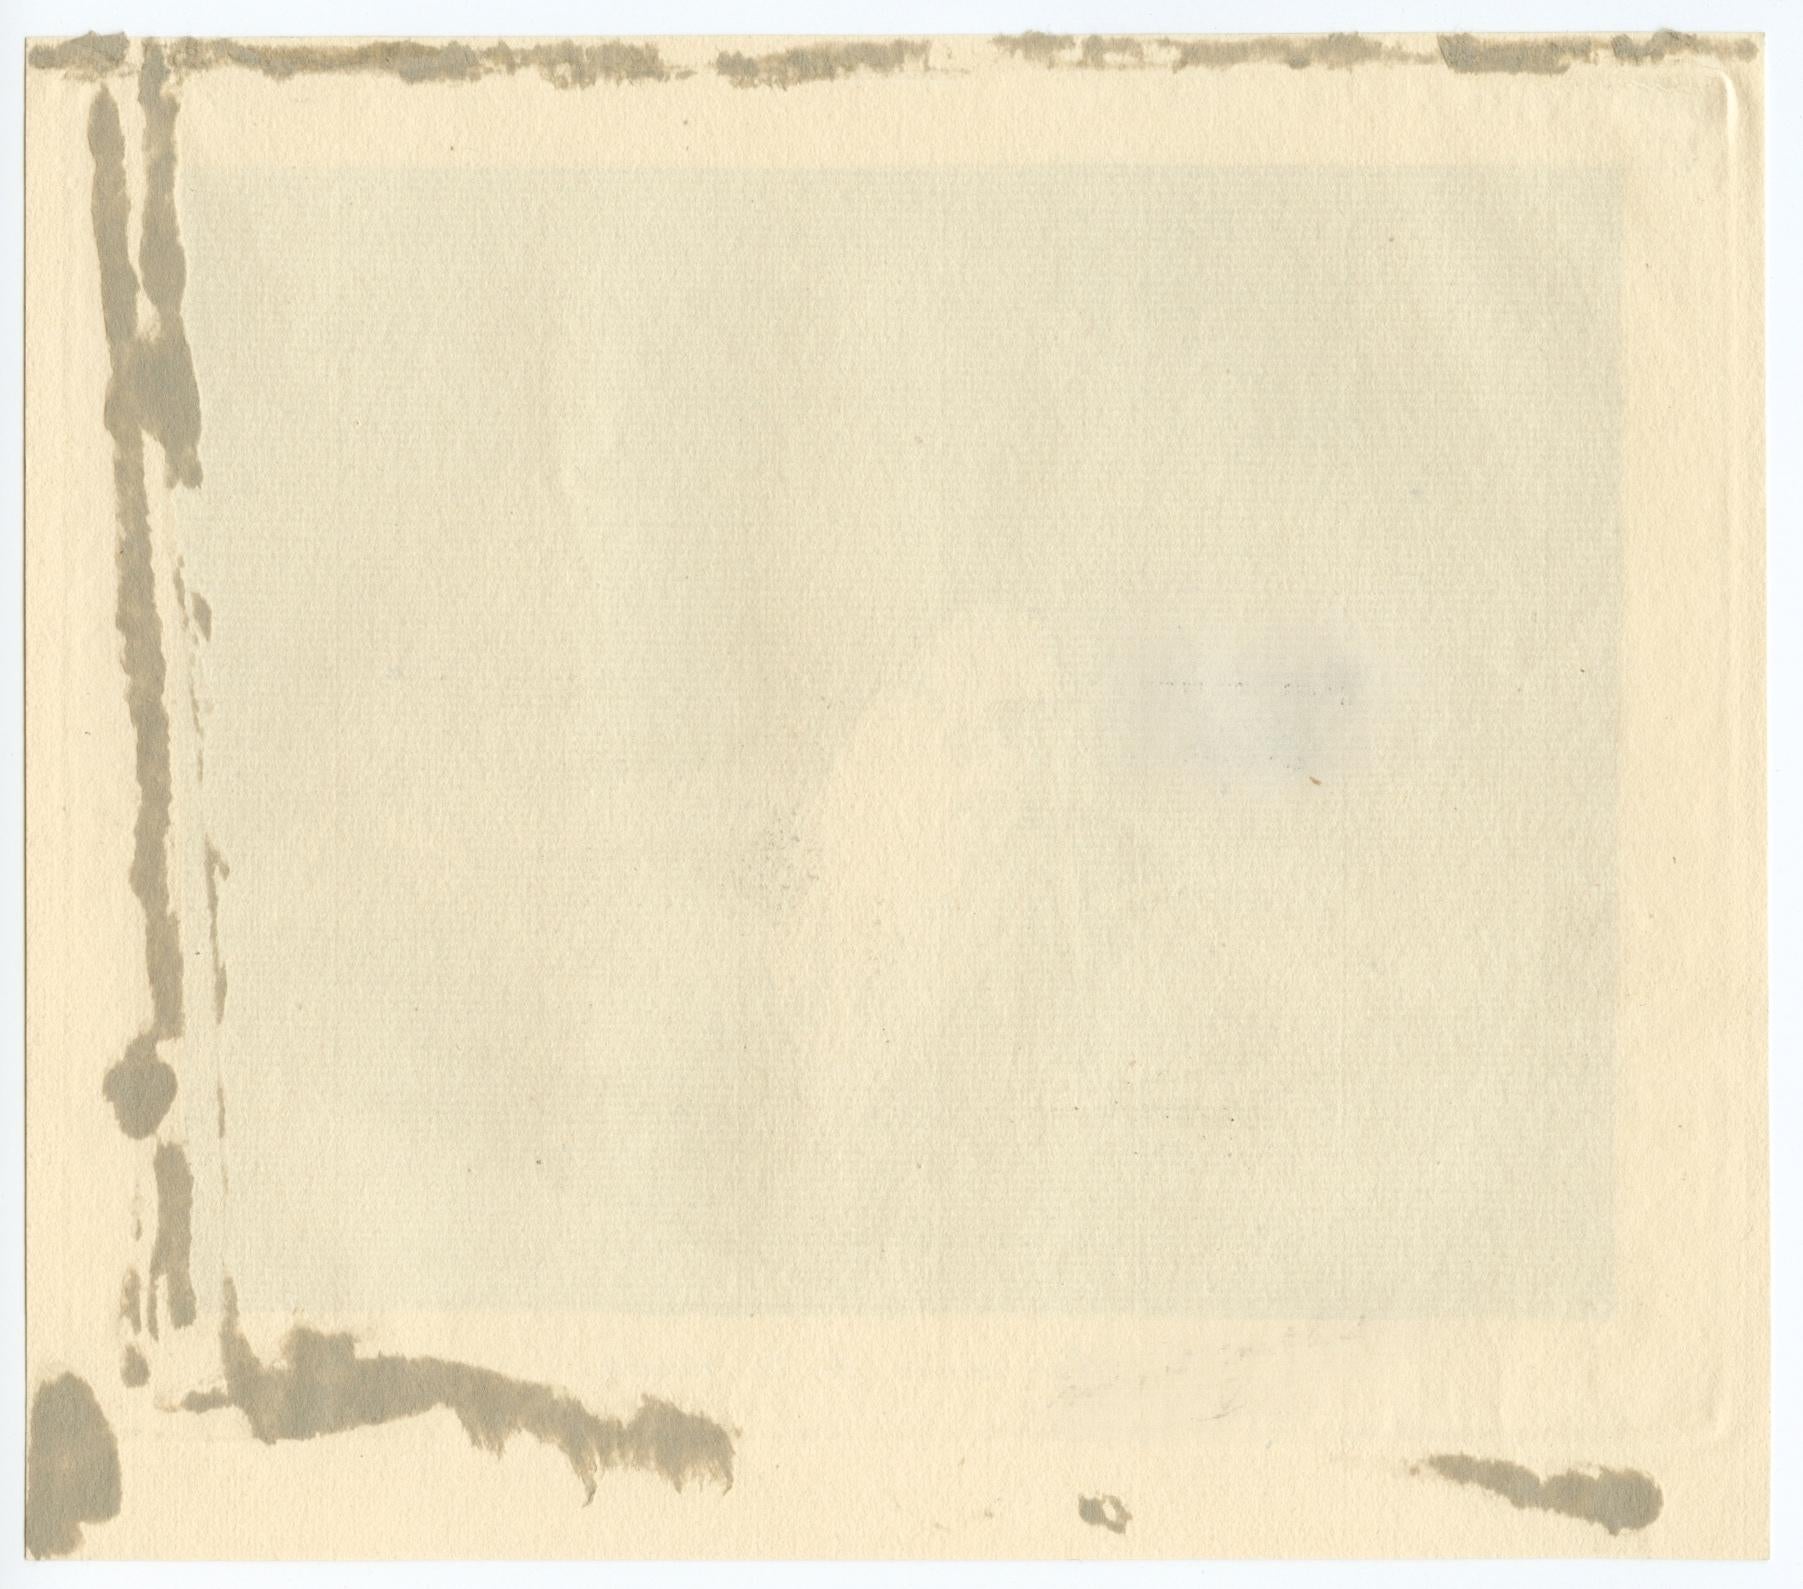 Medium: Radierung und Aquatinta. Dies ist Tafel 62 aus Goyas Serie Los Desatres de la Guerra; der spanische Titel bedeutet übersetzt 